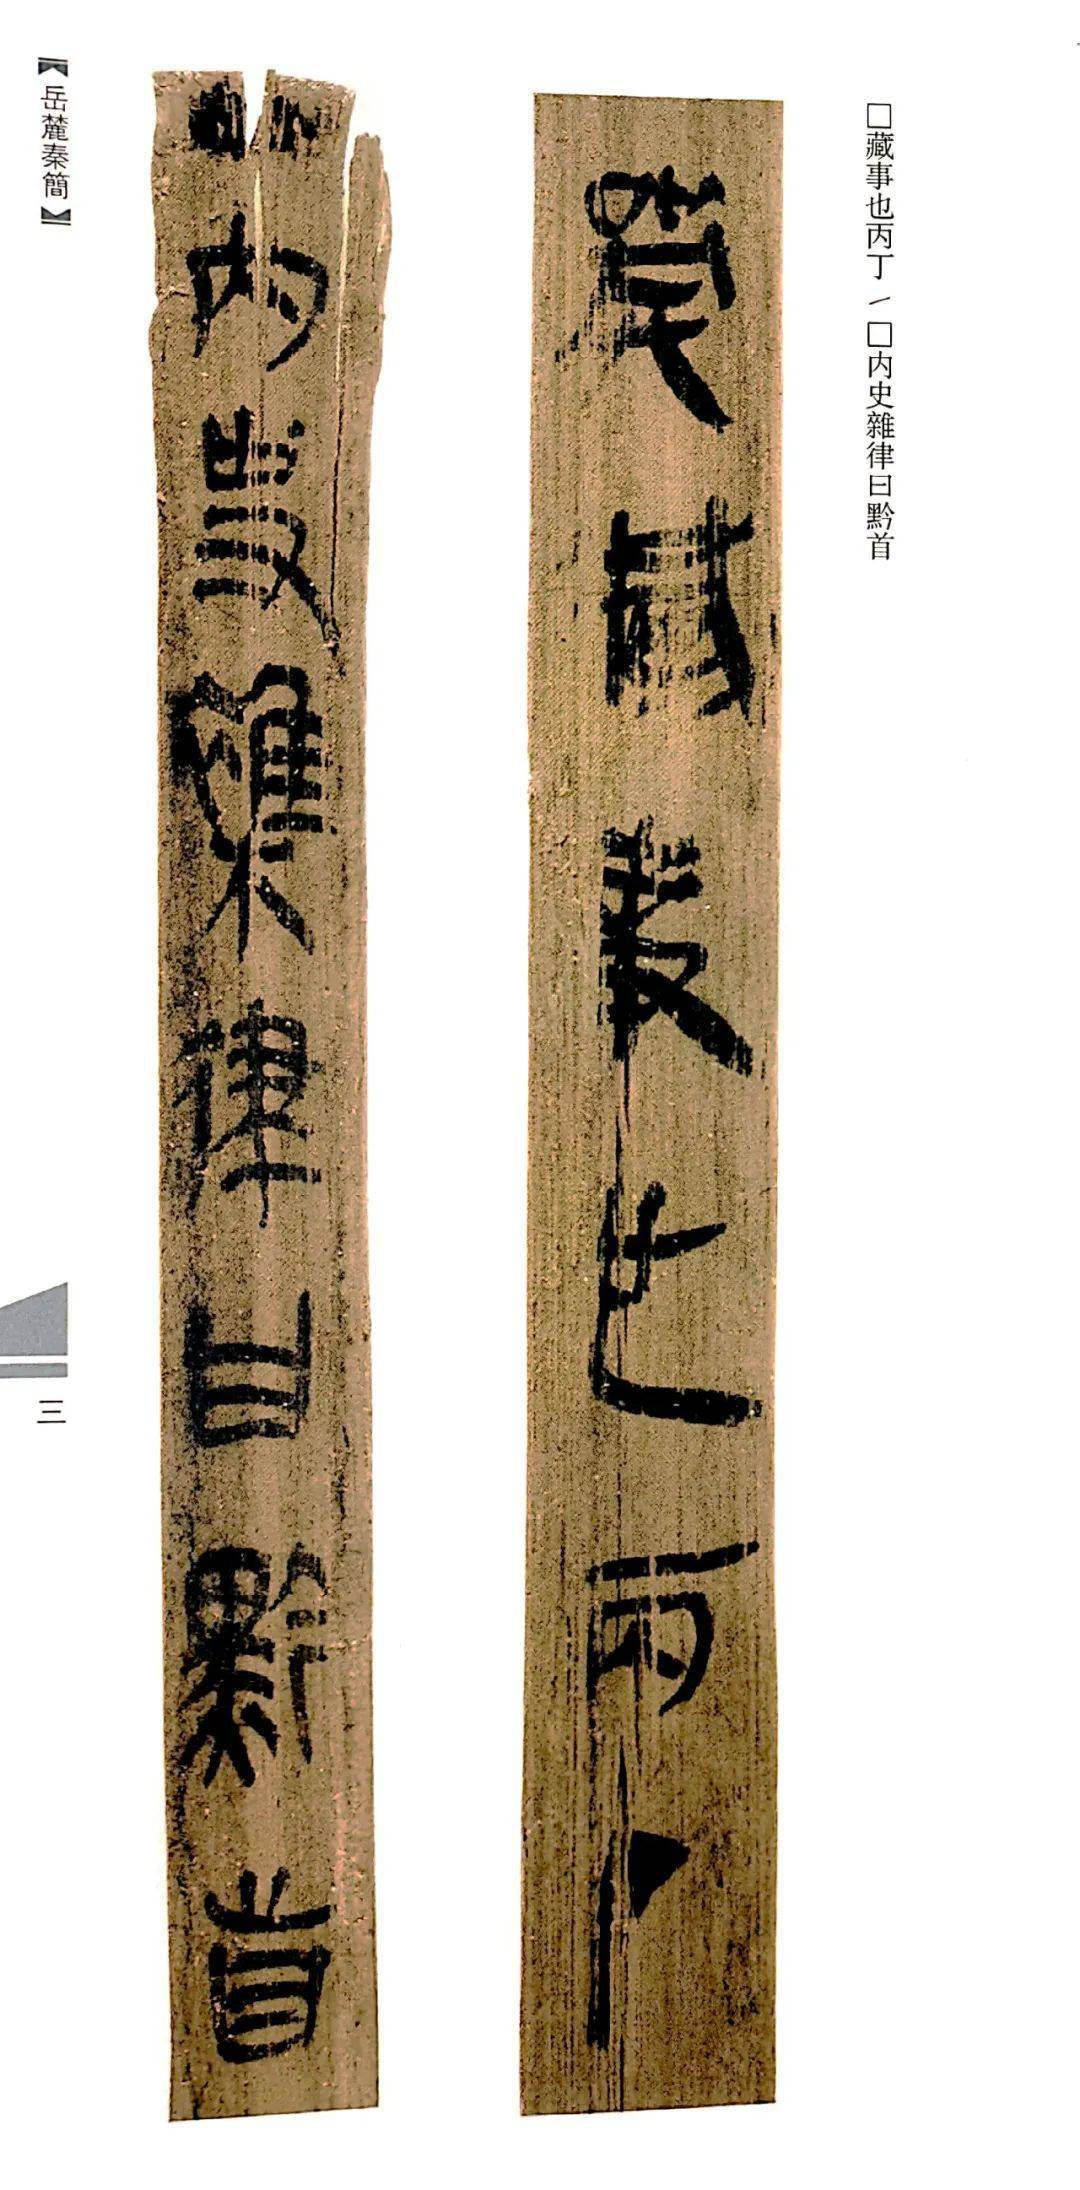 简牍是对我国古代遗存下来的写有文字的竹简与木牍的概称,用竹片写的